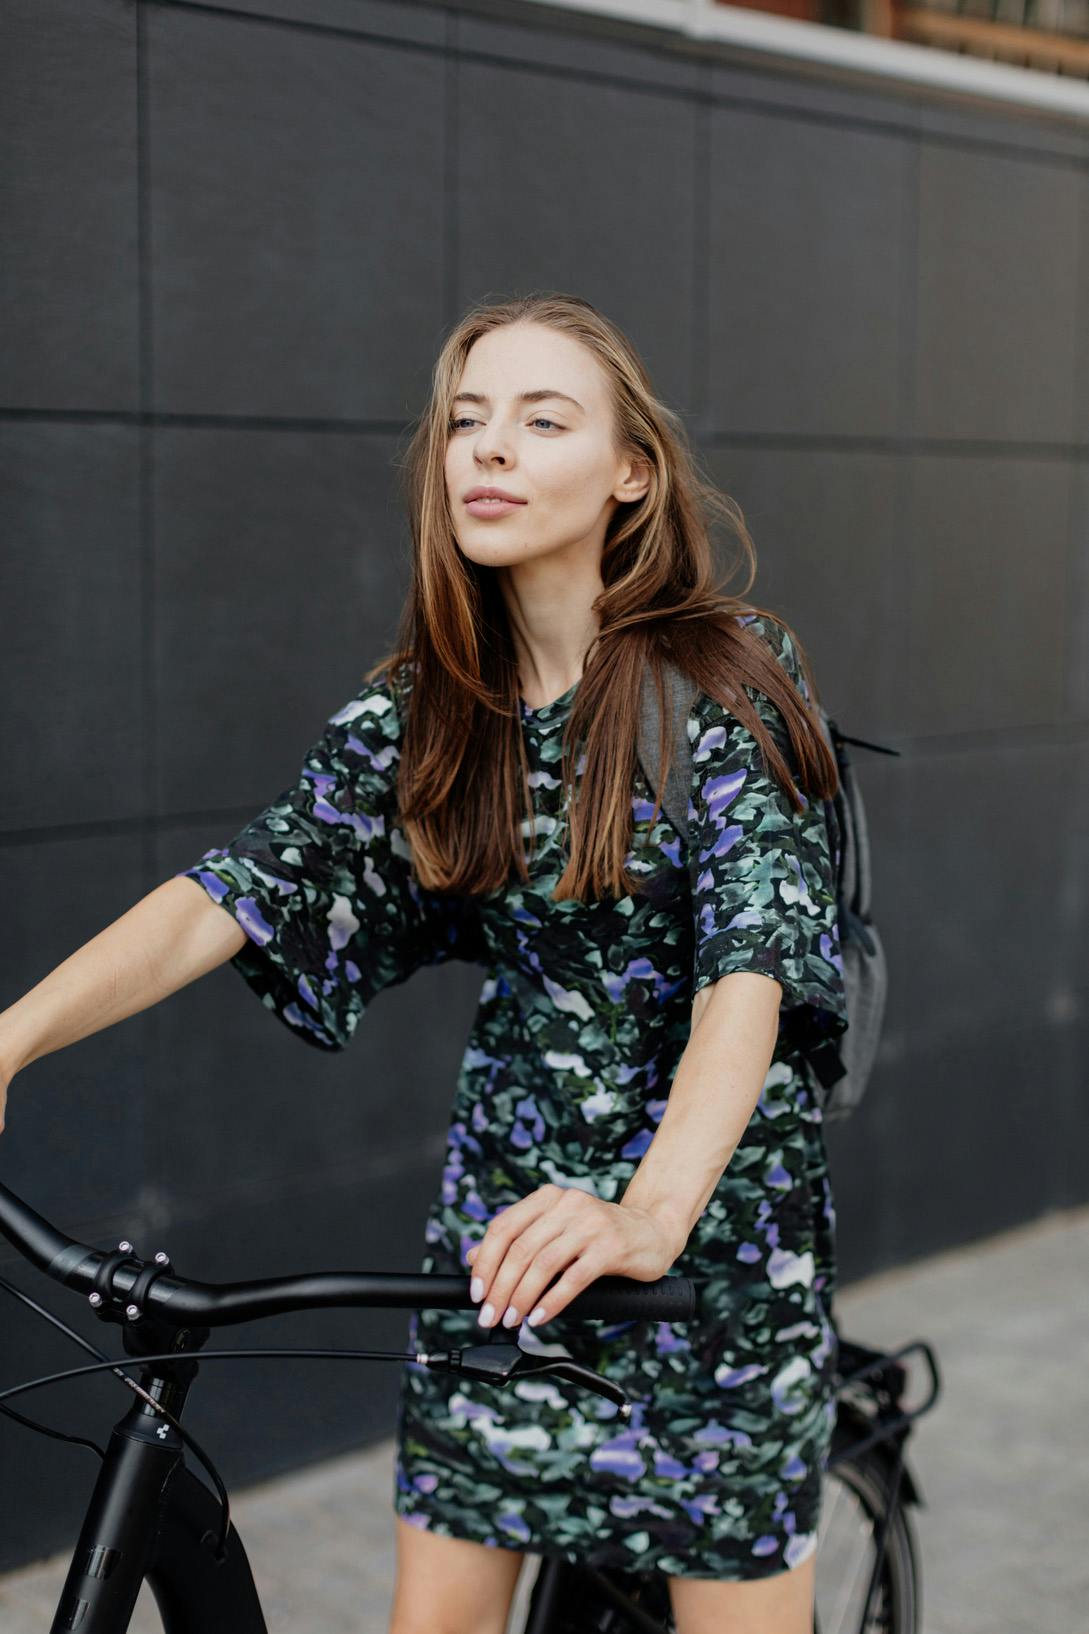 Mujer con vestido floral a punto de andar en bicicleta negra